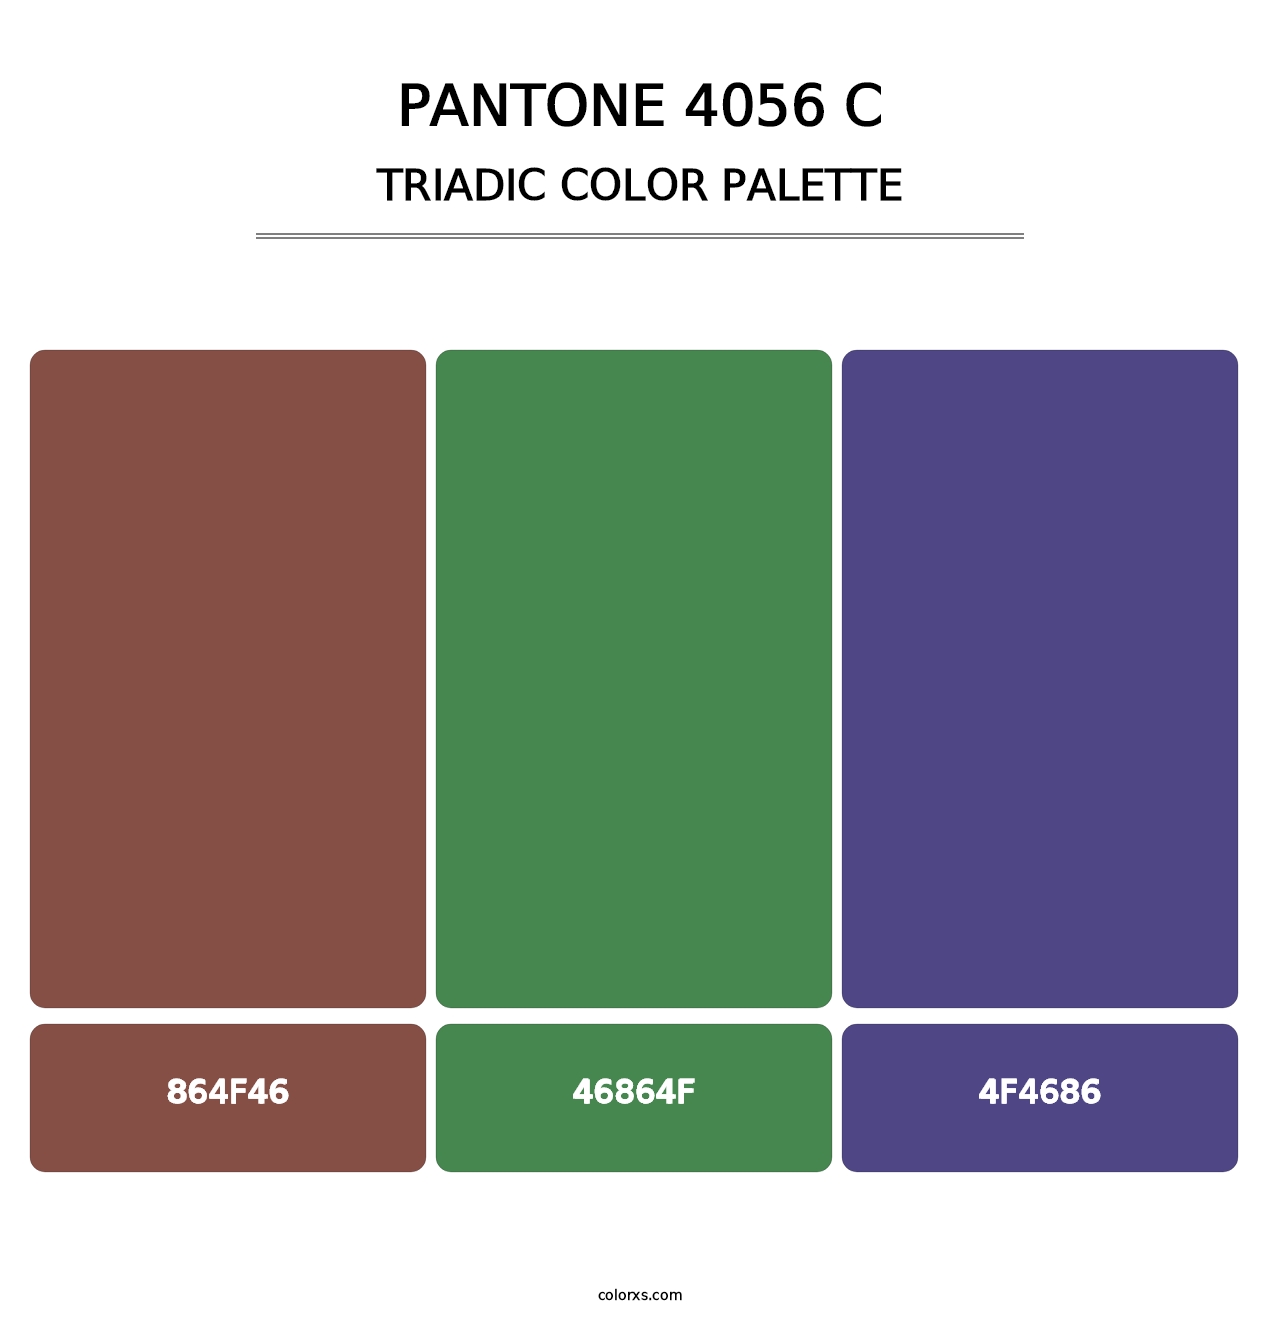 PANTONE 4056 C - Triadic Color Palette